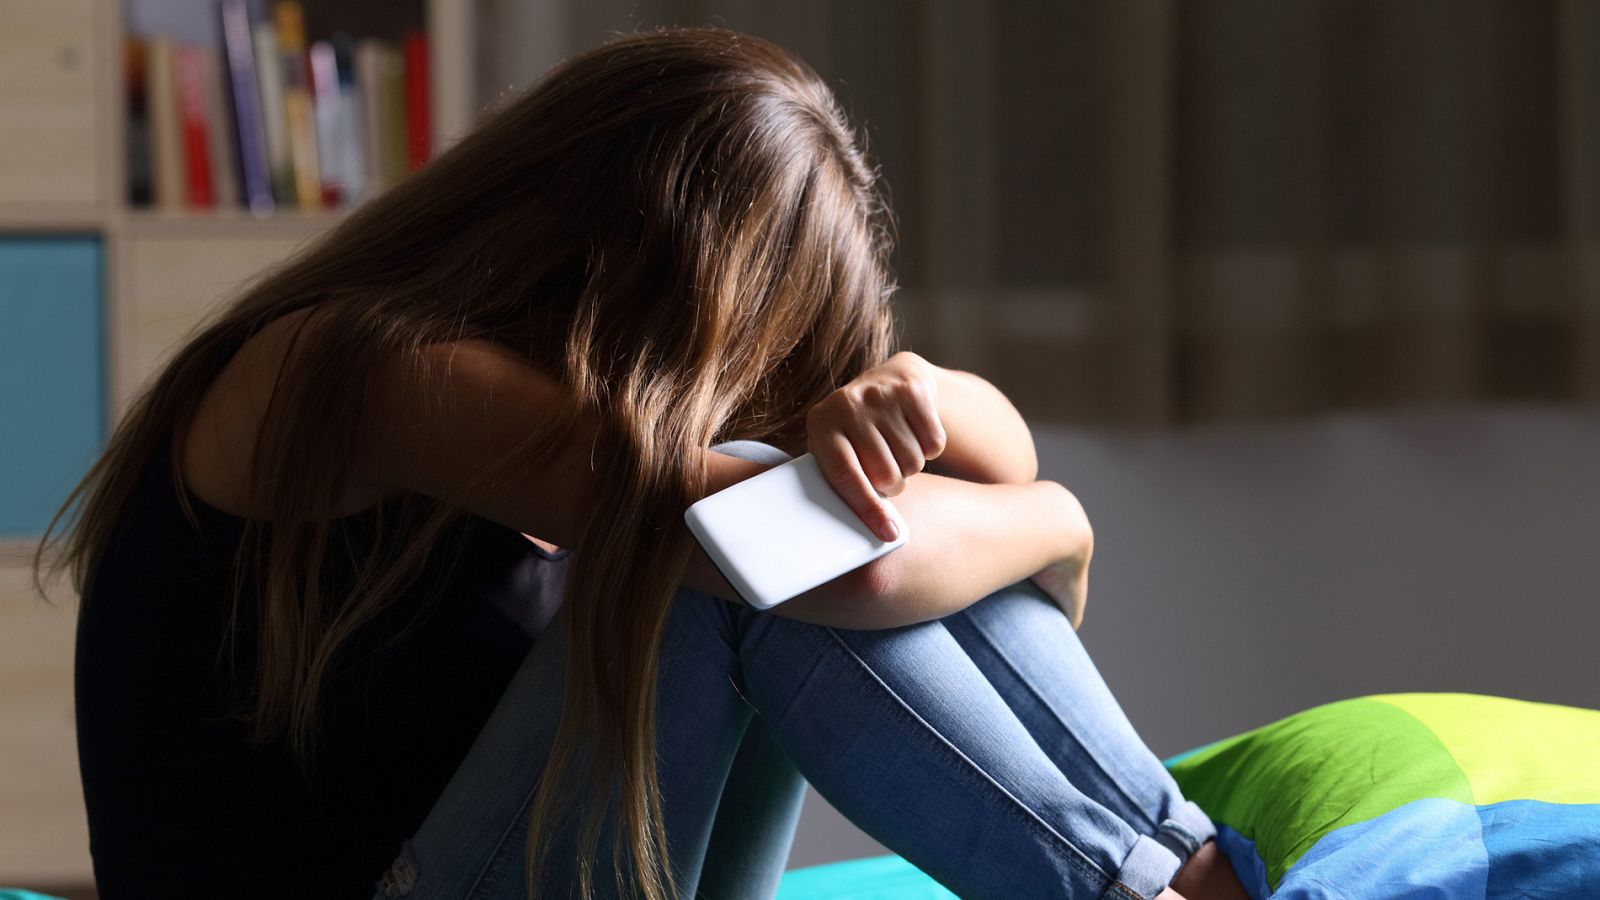 El acoso a través de las redes sociales representa uno de cada cuatro casos de 'bullying', según la Fundación Anar